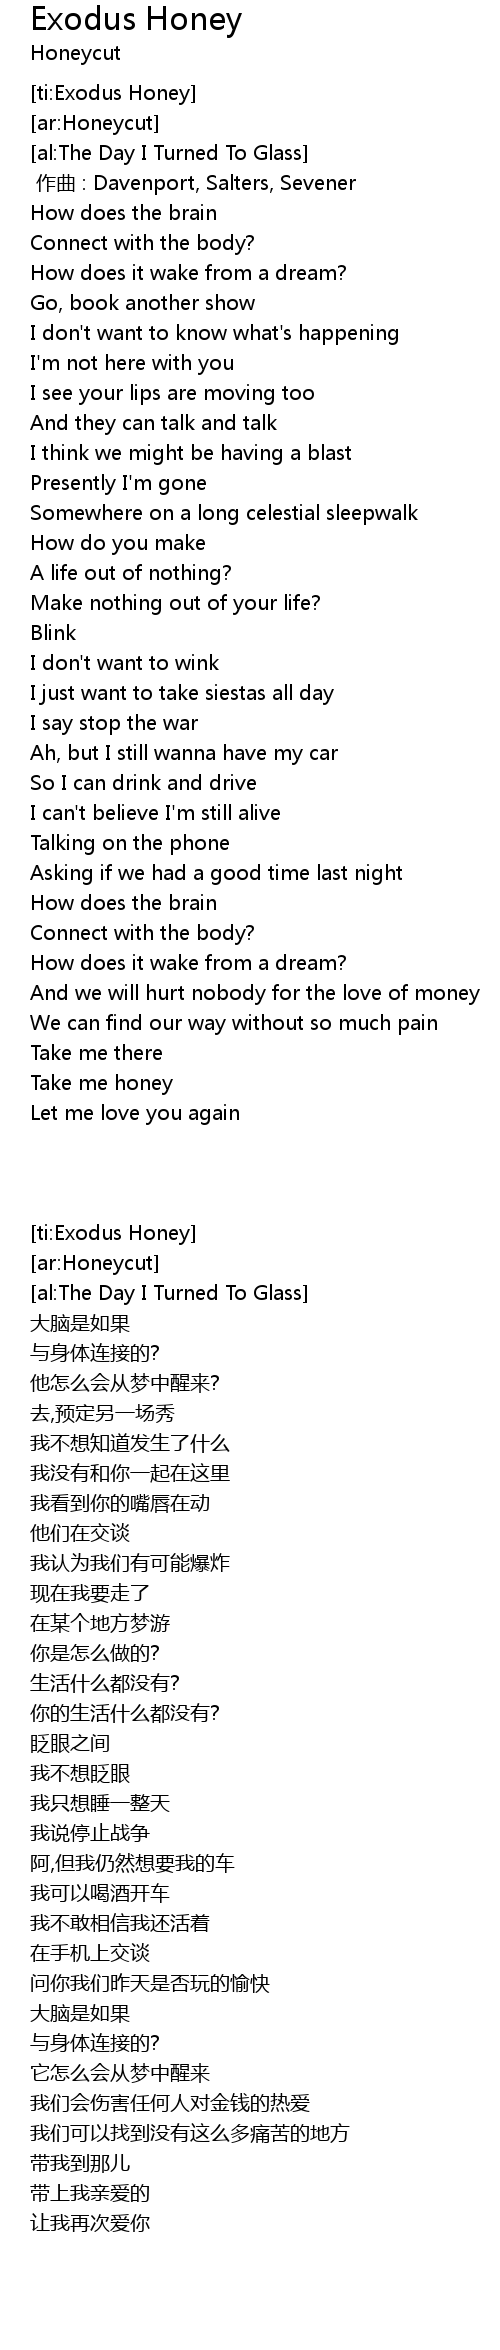 Exodus Honey 歌词 歌词网